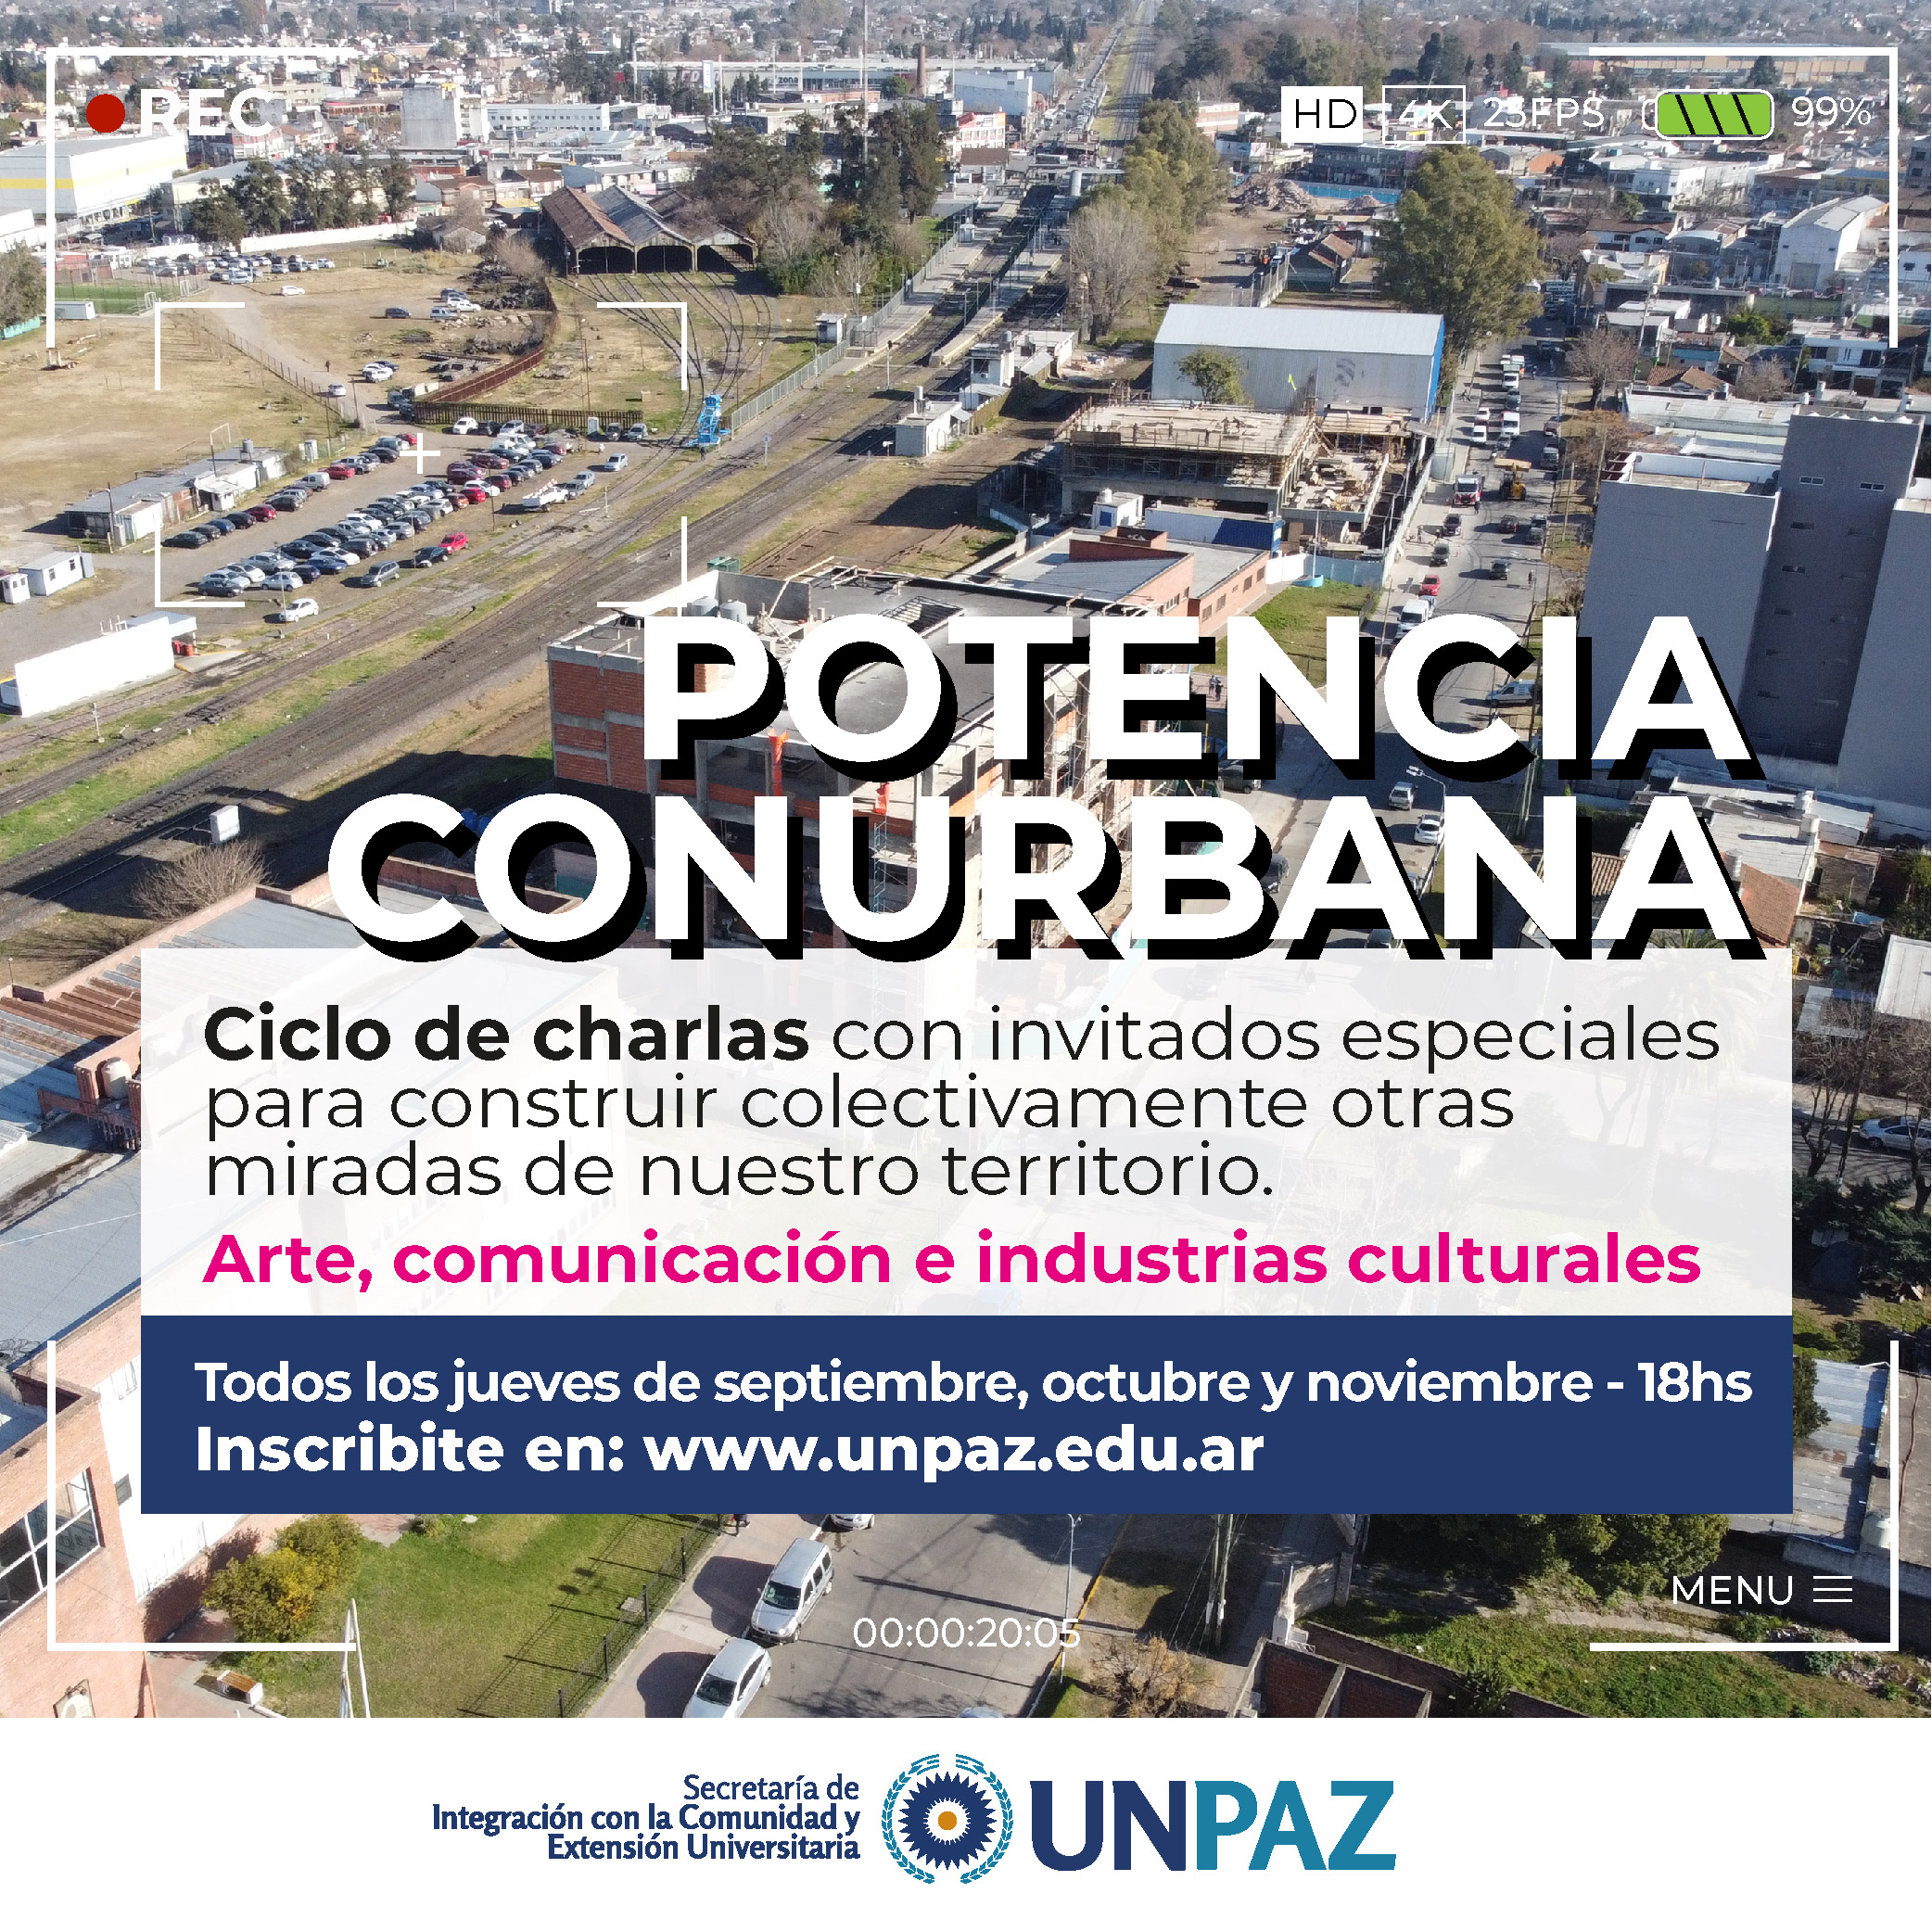 Se realizará el ciclo de charlas “Potencia Conurbana” en la UNPAZ